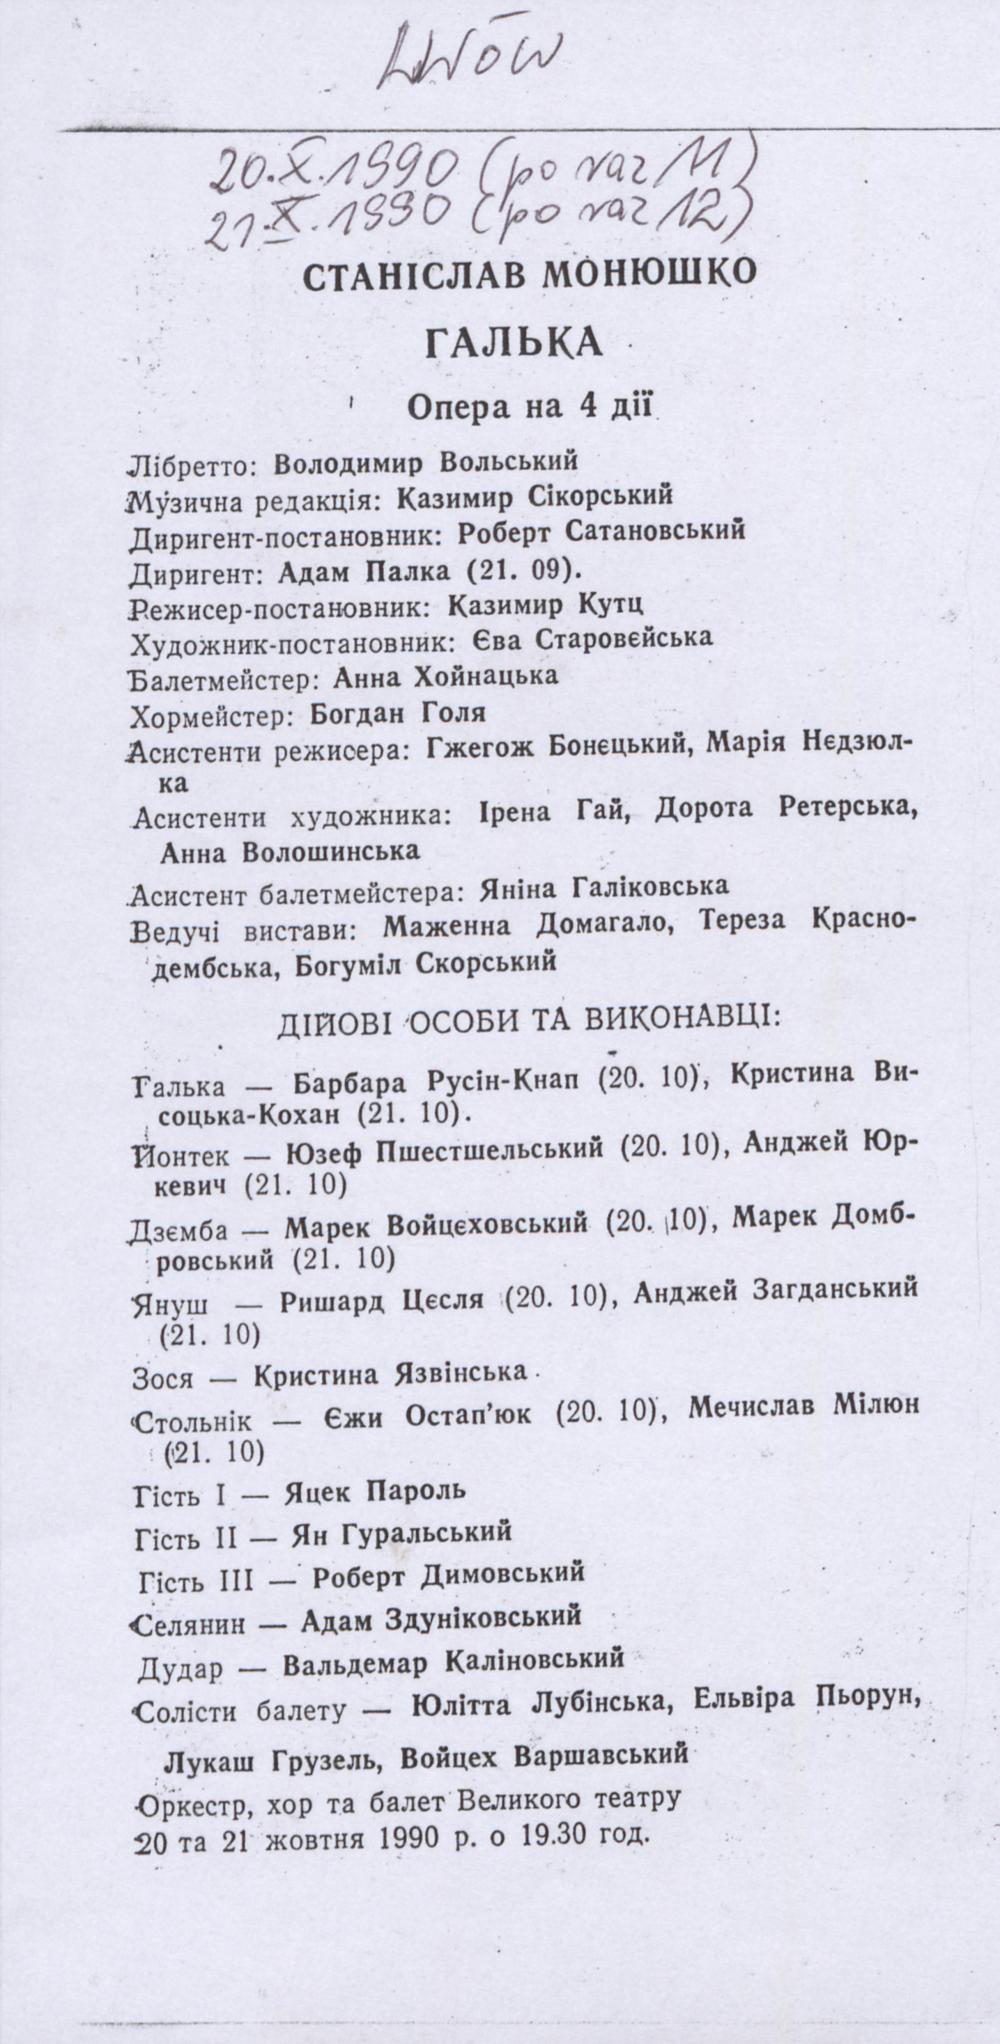 Wkładka obsadowa „Halka” Stanisław Moniuszko 20-10-1990, 21-10-1990 Lwów